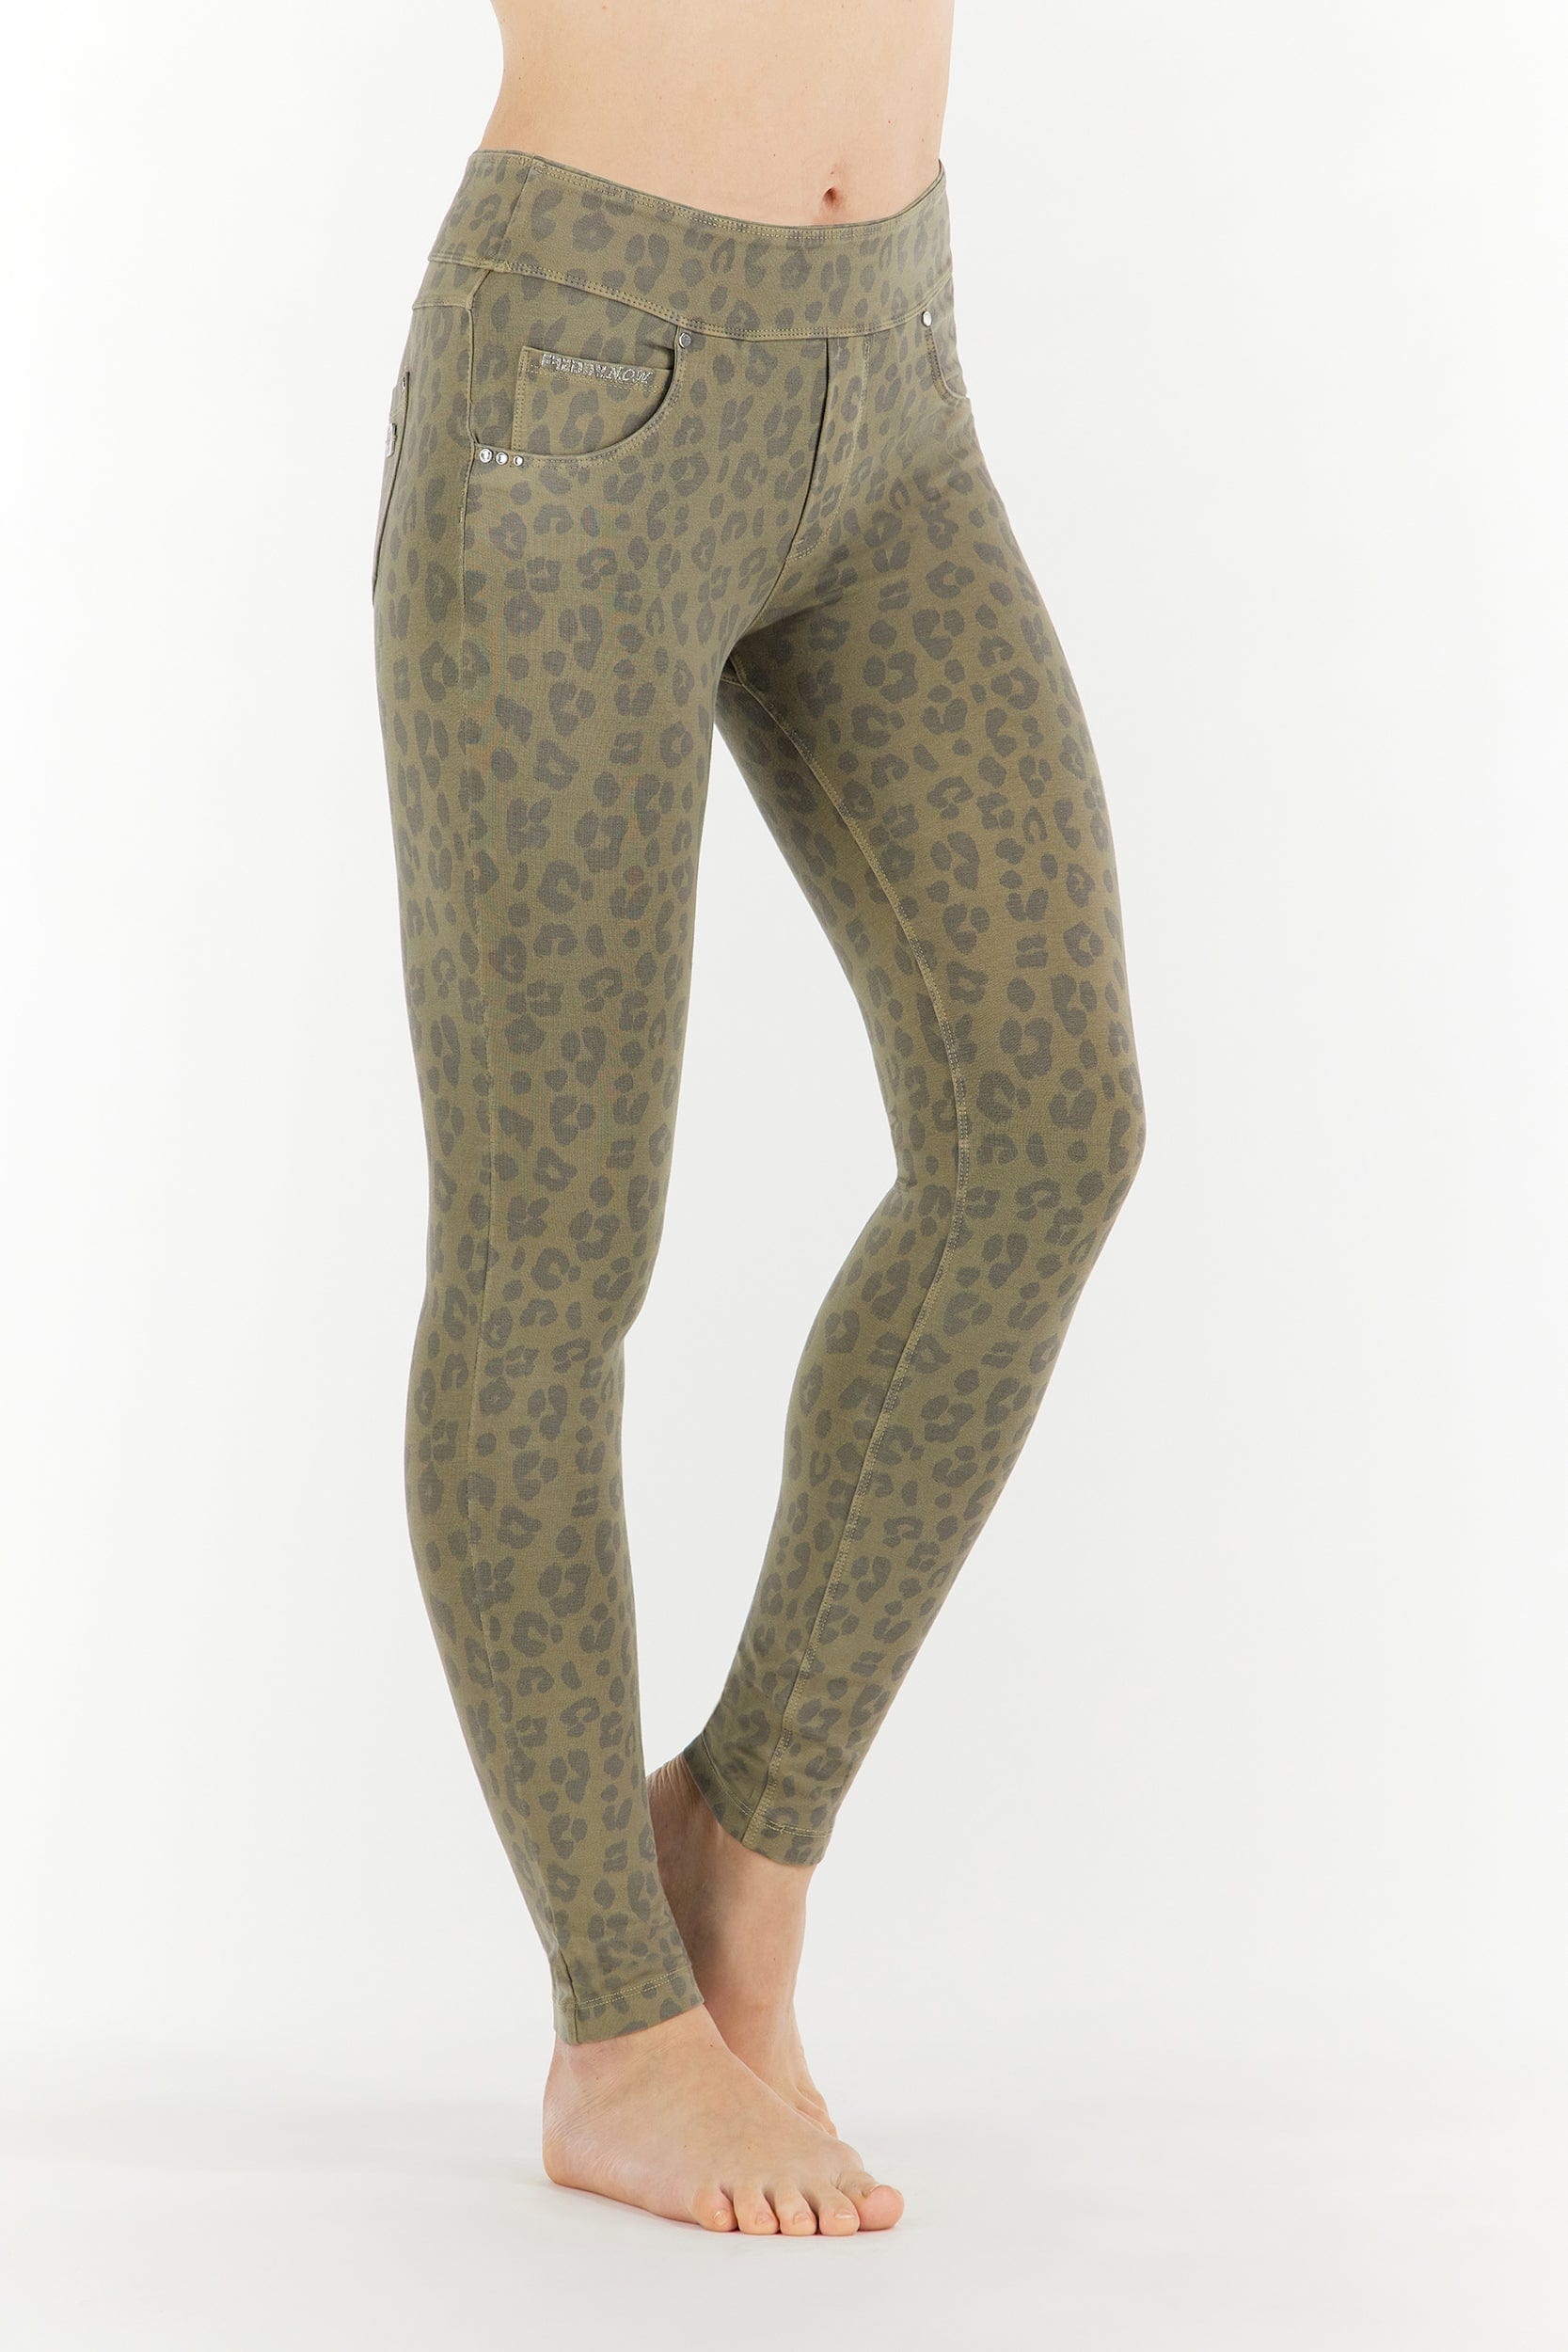 N.O.W.® Yoga Fashion - Mid Waist - Full Length - Beige Leopard 2